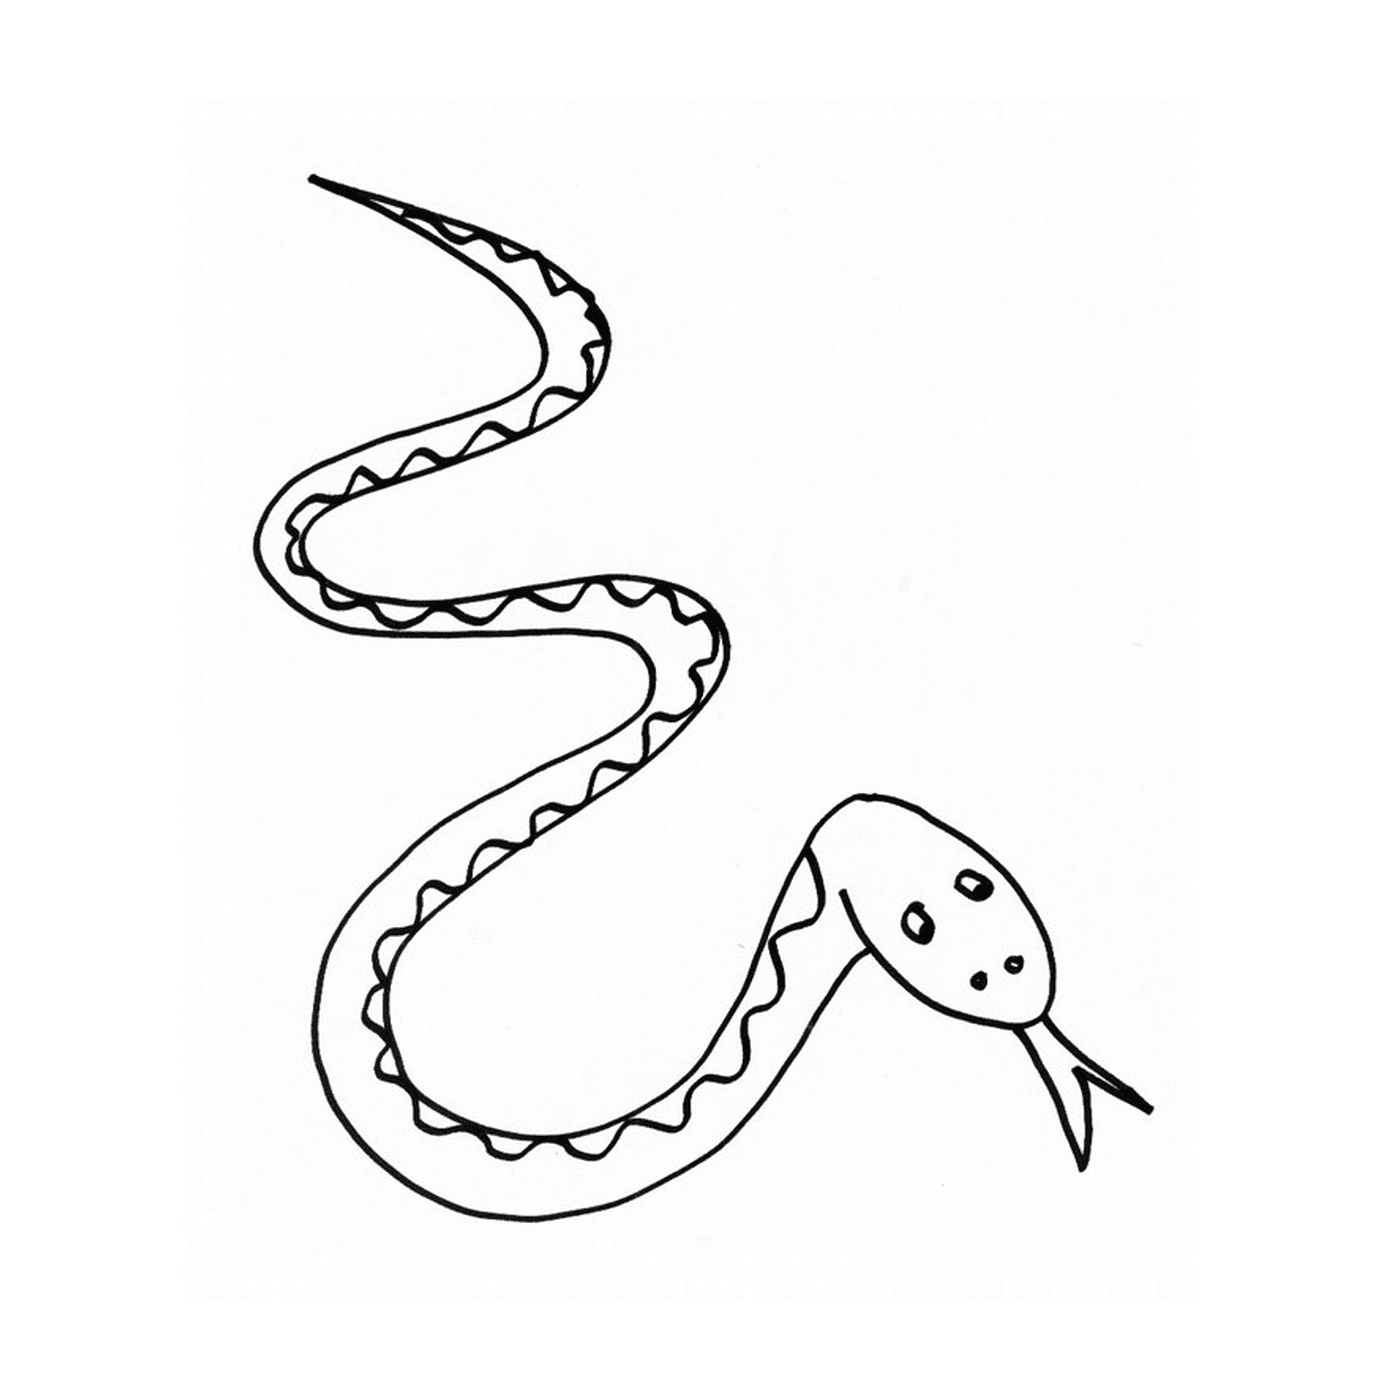   Un serpent dessiné 